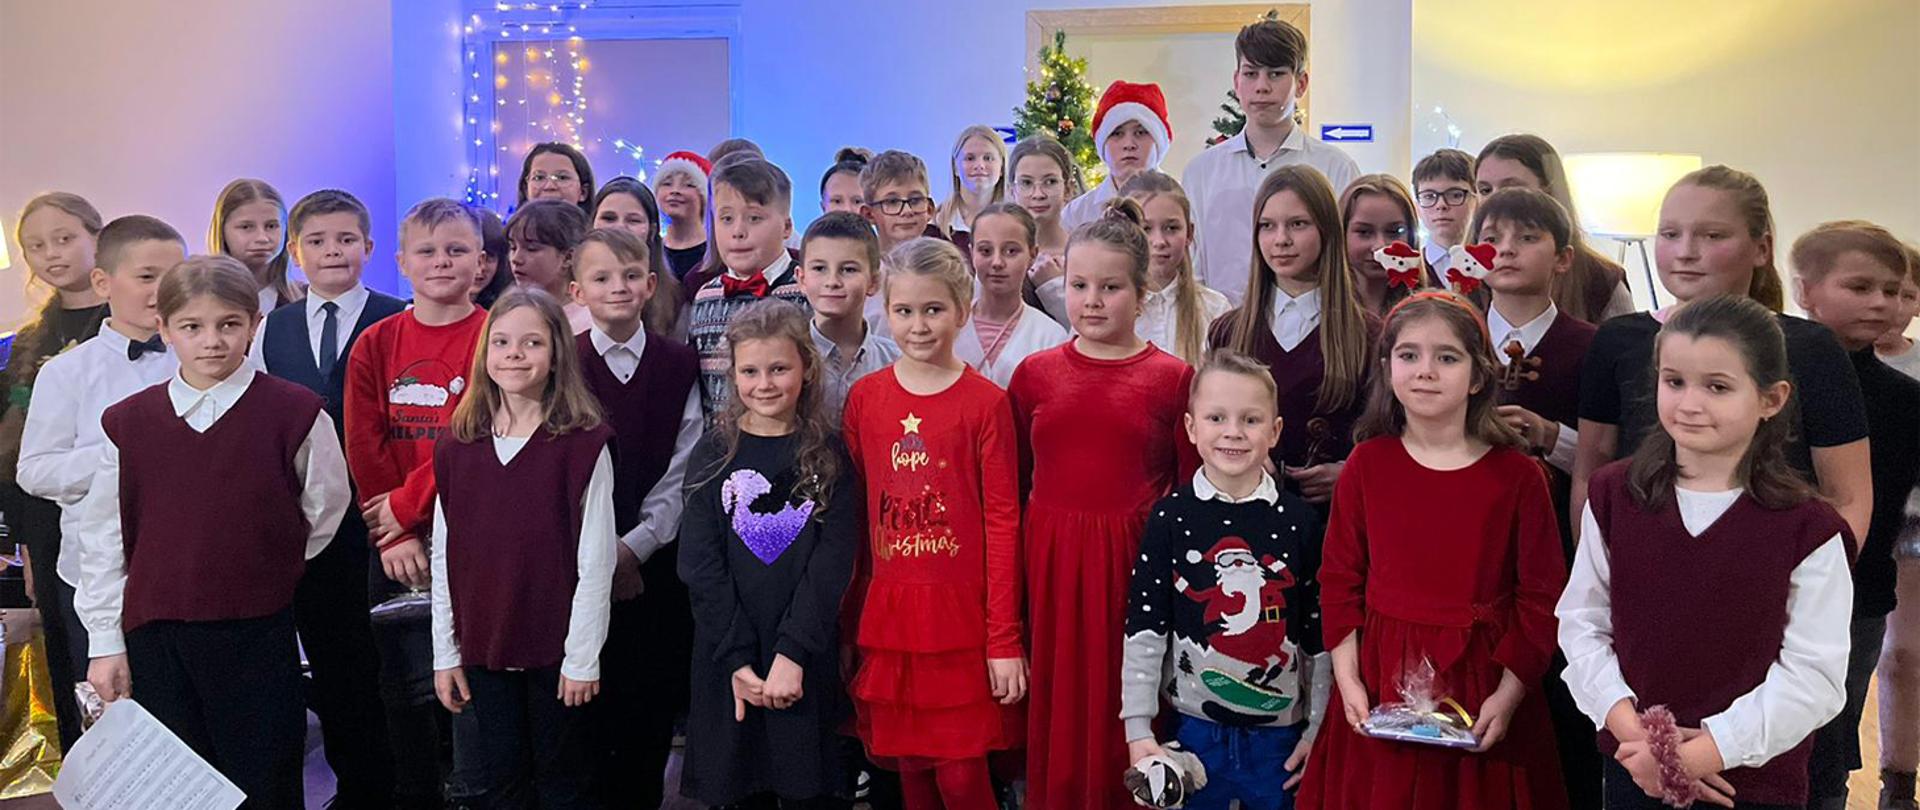 Duża grupa uczniów stoi w auli szkoły, za nimi widać udekorowaną choinkę, dzieci ubrani są w bożonarodzeniowe stroje.